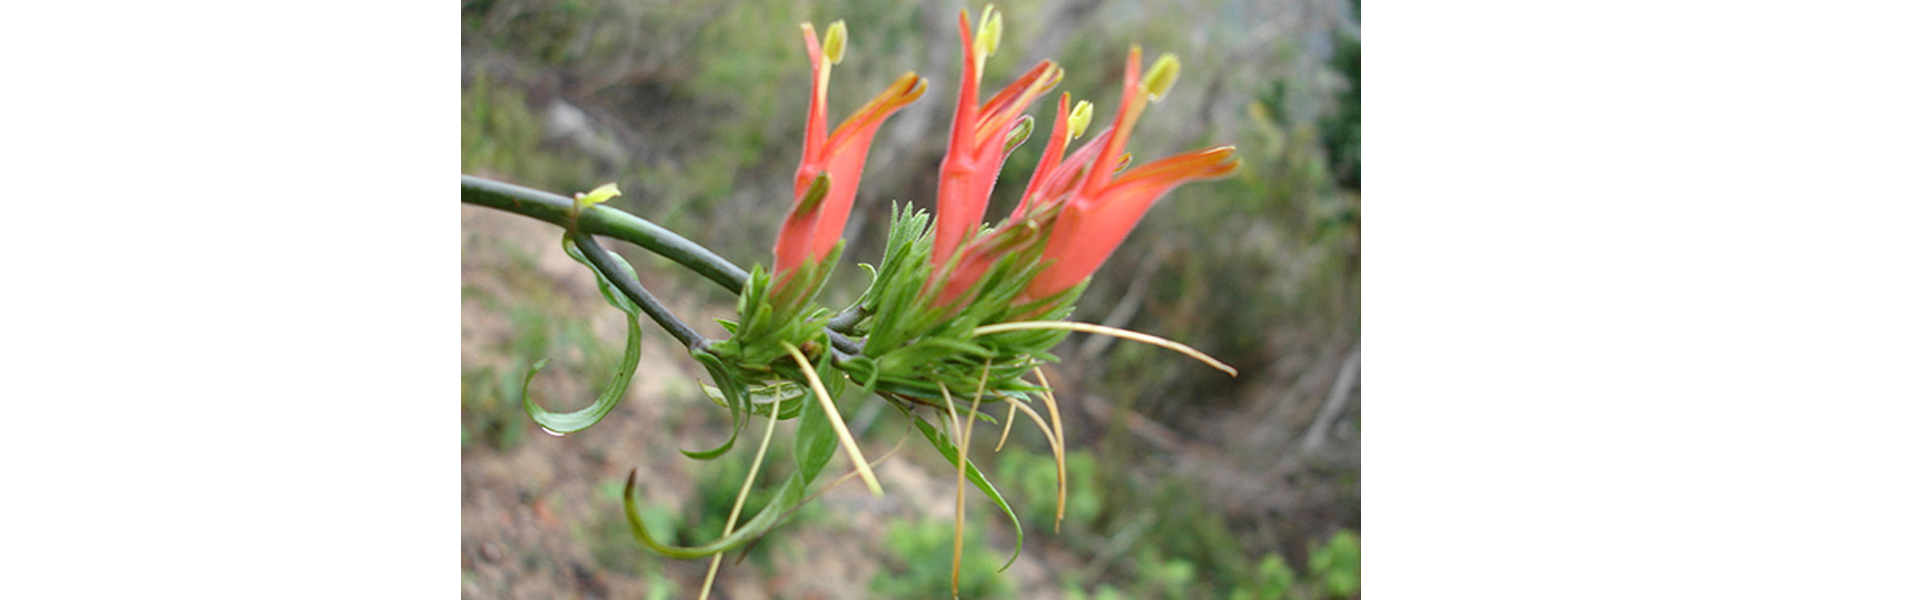 Une fleur Clinacanthus Nutans (source frynn.com)